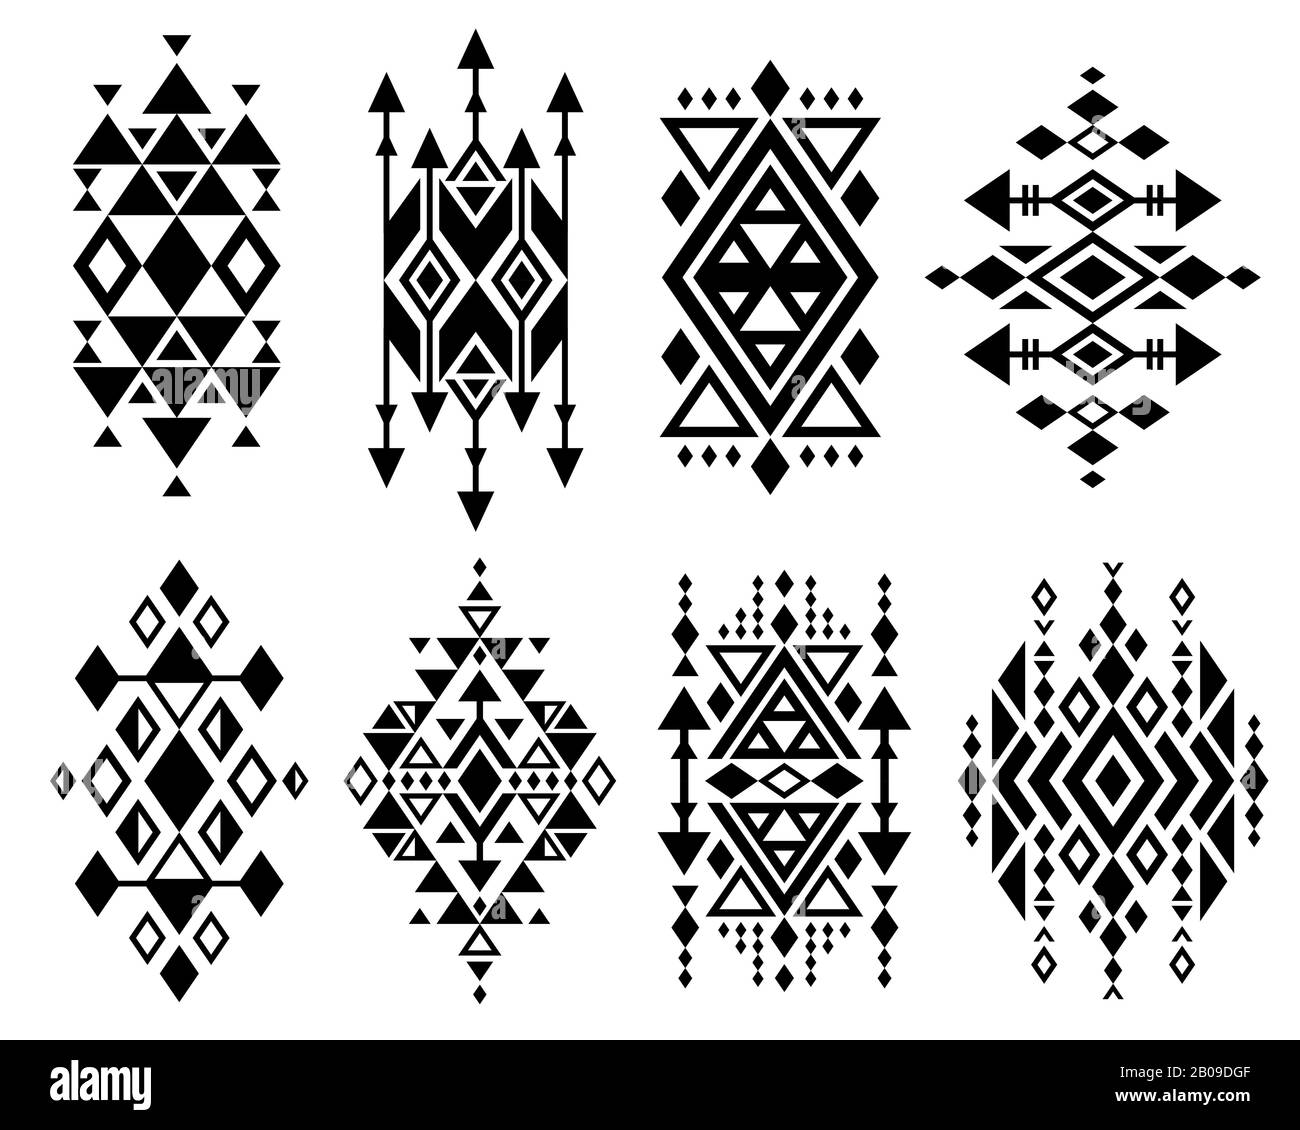 Klassisches mexikanisches azteken-tribal-Design mit traditionellem Vektorlogo, navajo-druck. Dekoration traditionelles aztekisches Design, Verilustration von geometrischem aztekischen Stammes Tattoo Stock Vektor